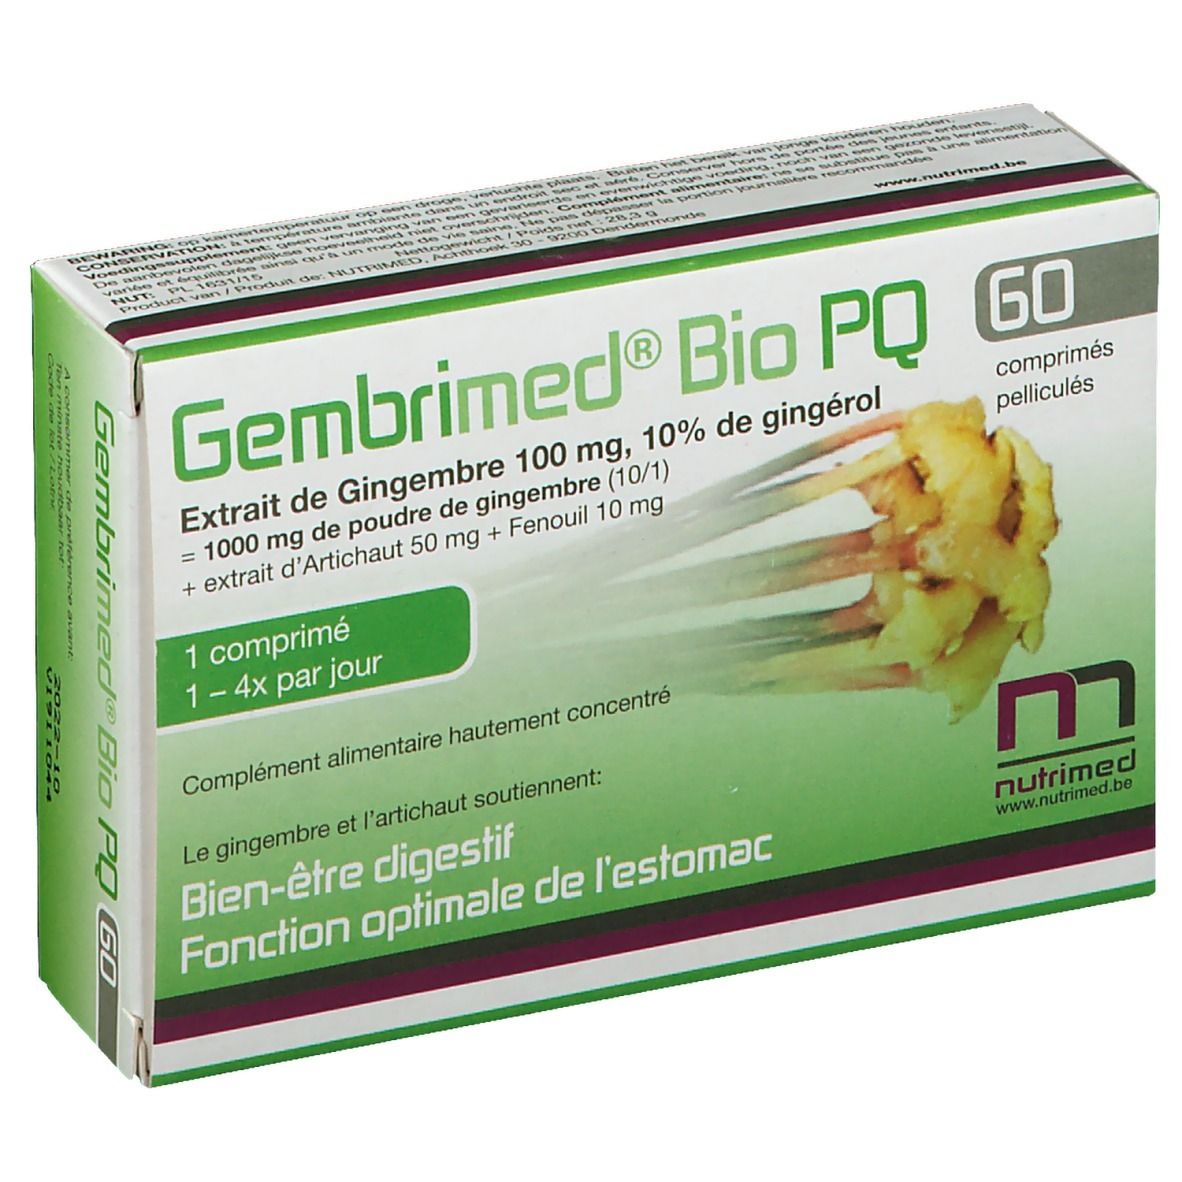 Gembrimed® Bio PQ Comprimés